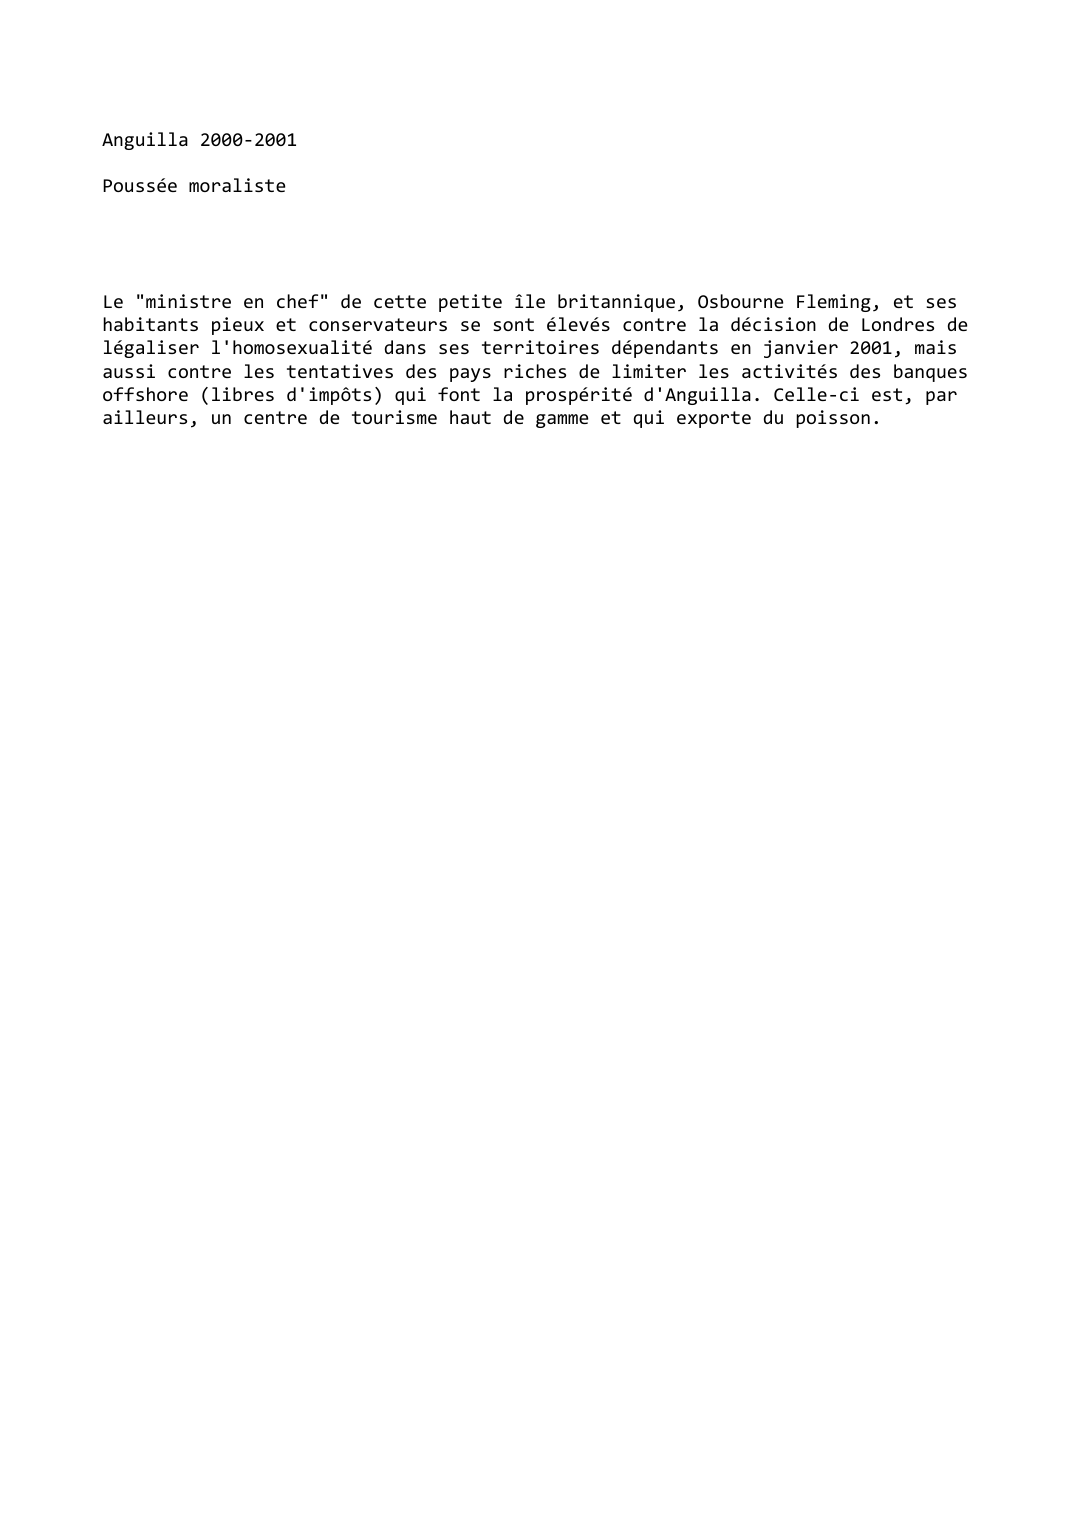 Prévisualisation du document Anguilla (2000-2001)
Poussée moraliste